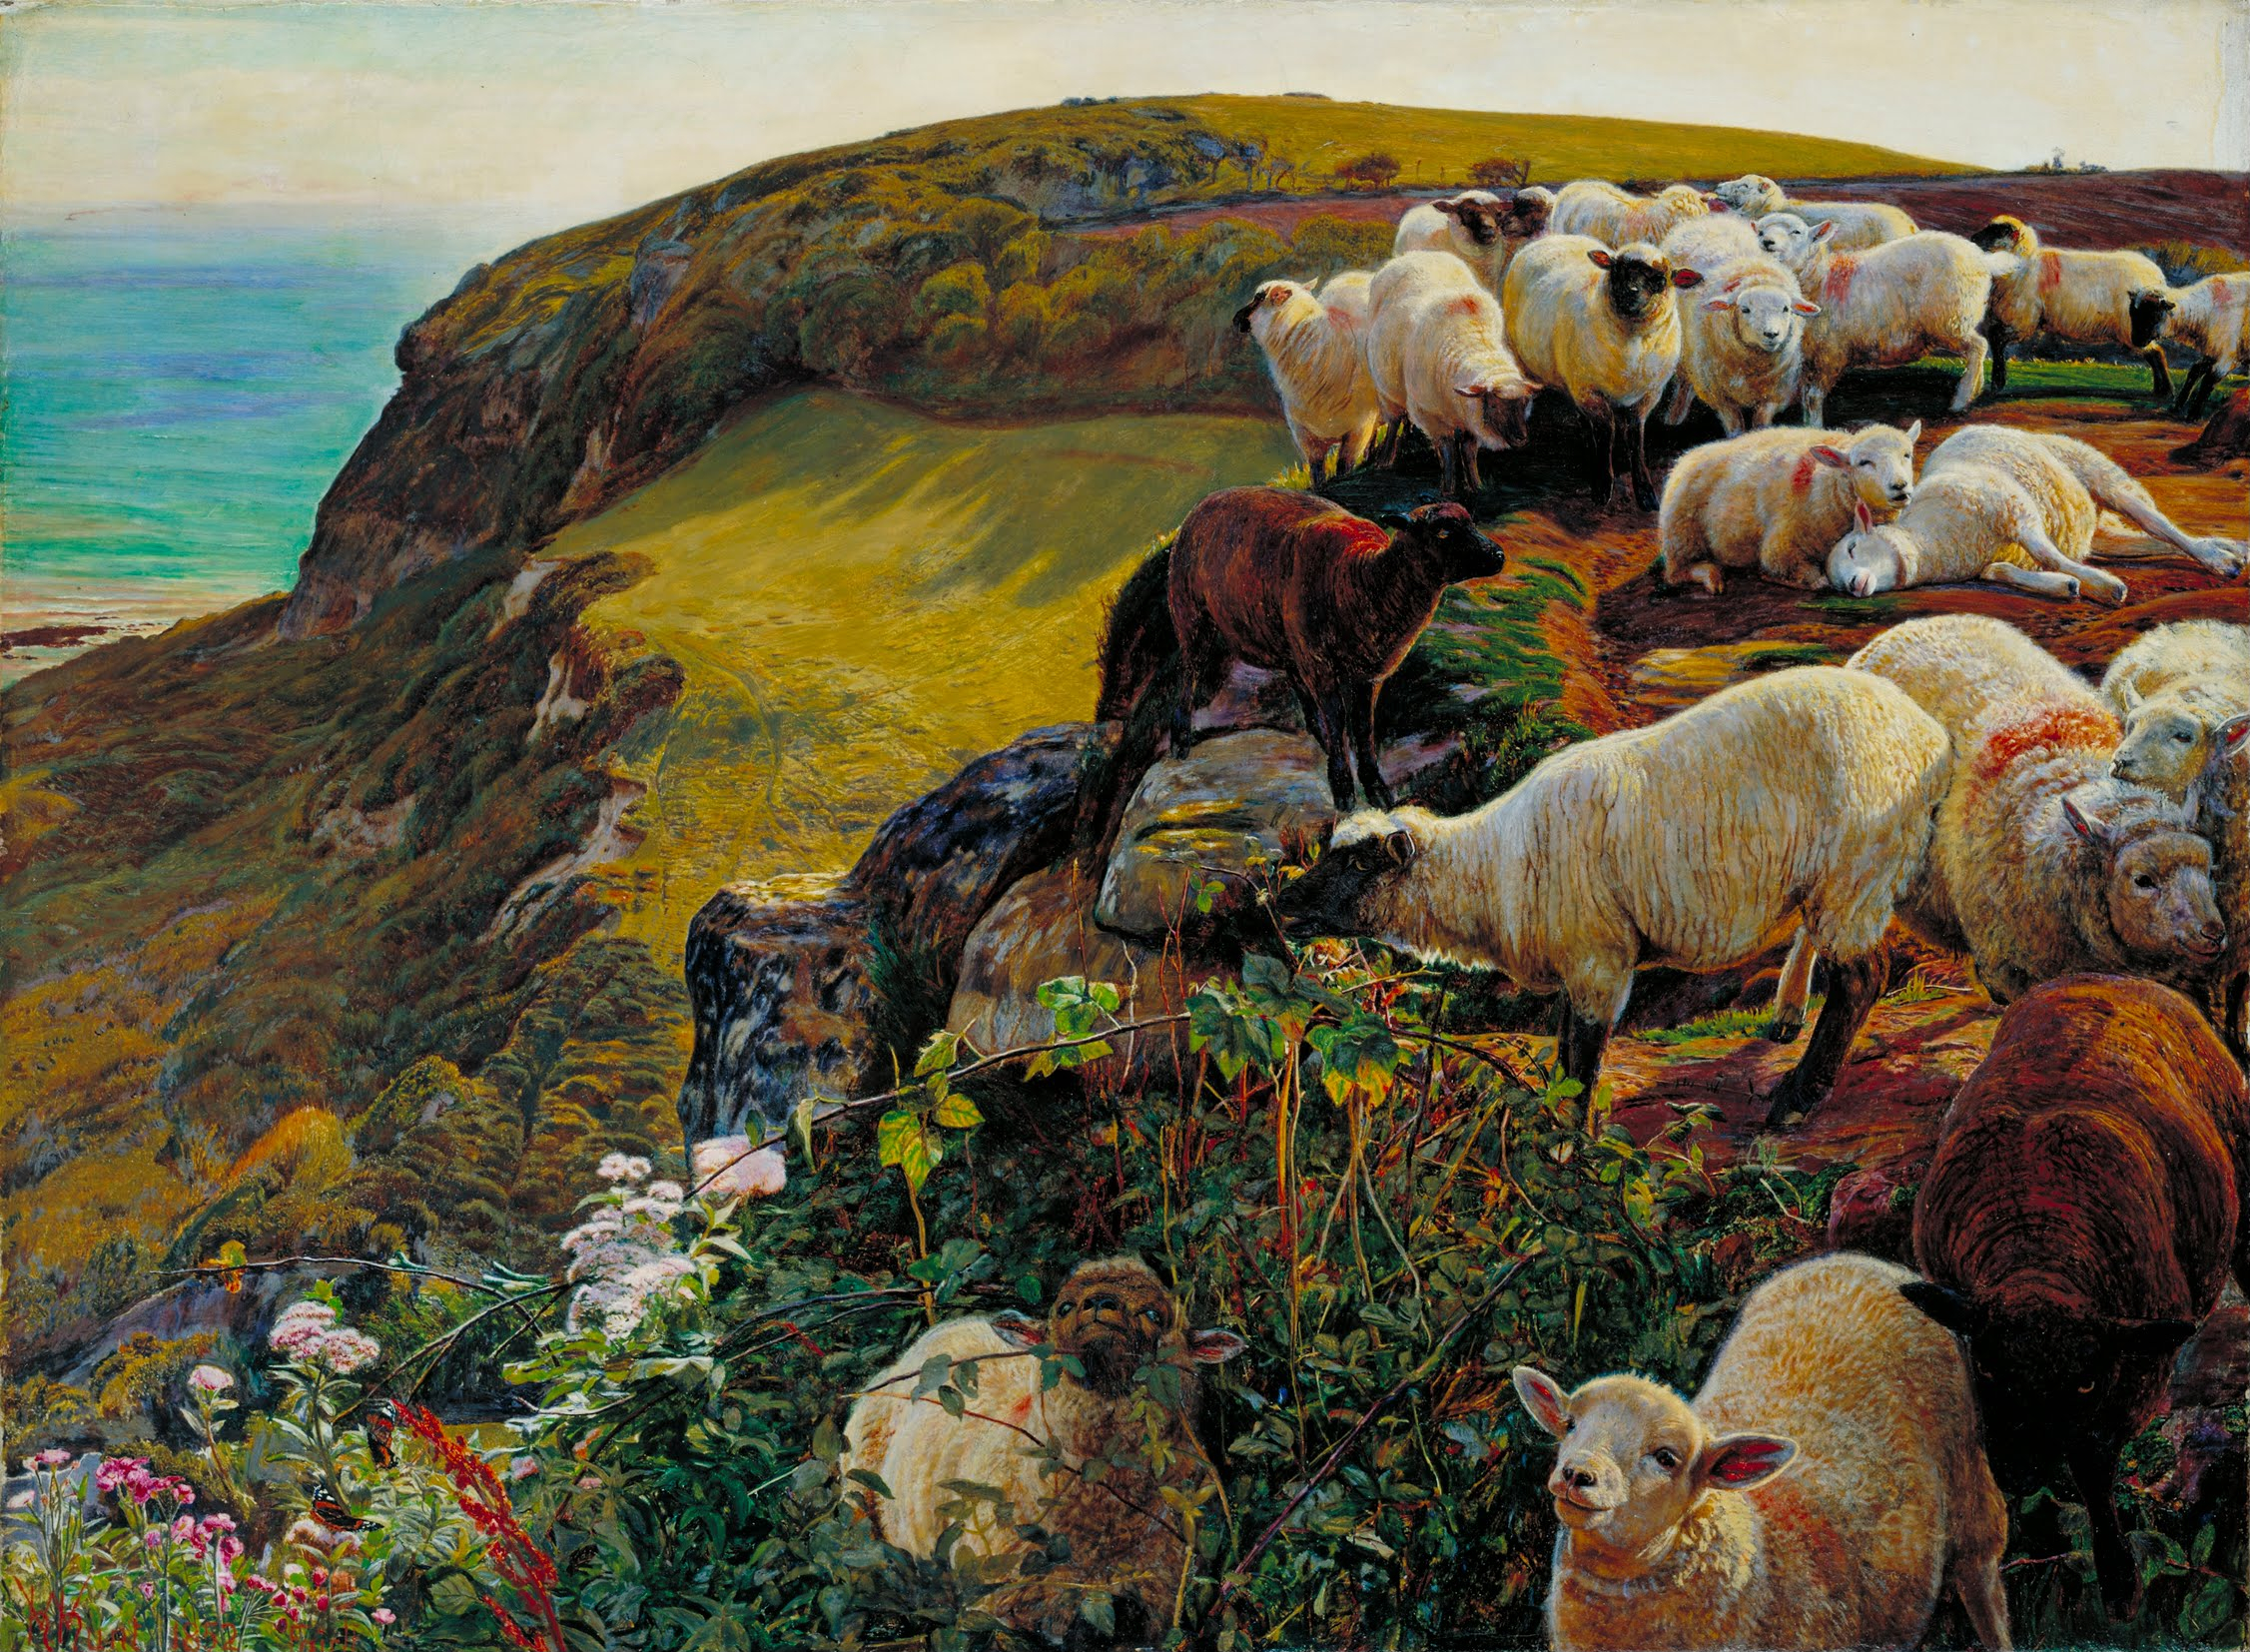 우리의 영국 해안, 1852년('길 잃은 양들')(Our English Coasts, 1852 (`Strayed Sheep')) by William Holman Hunt - 1852 - 58.4 x 43,2 cm 